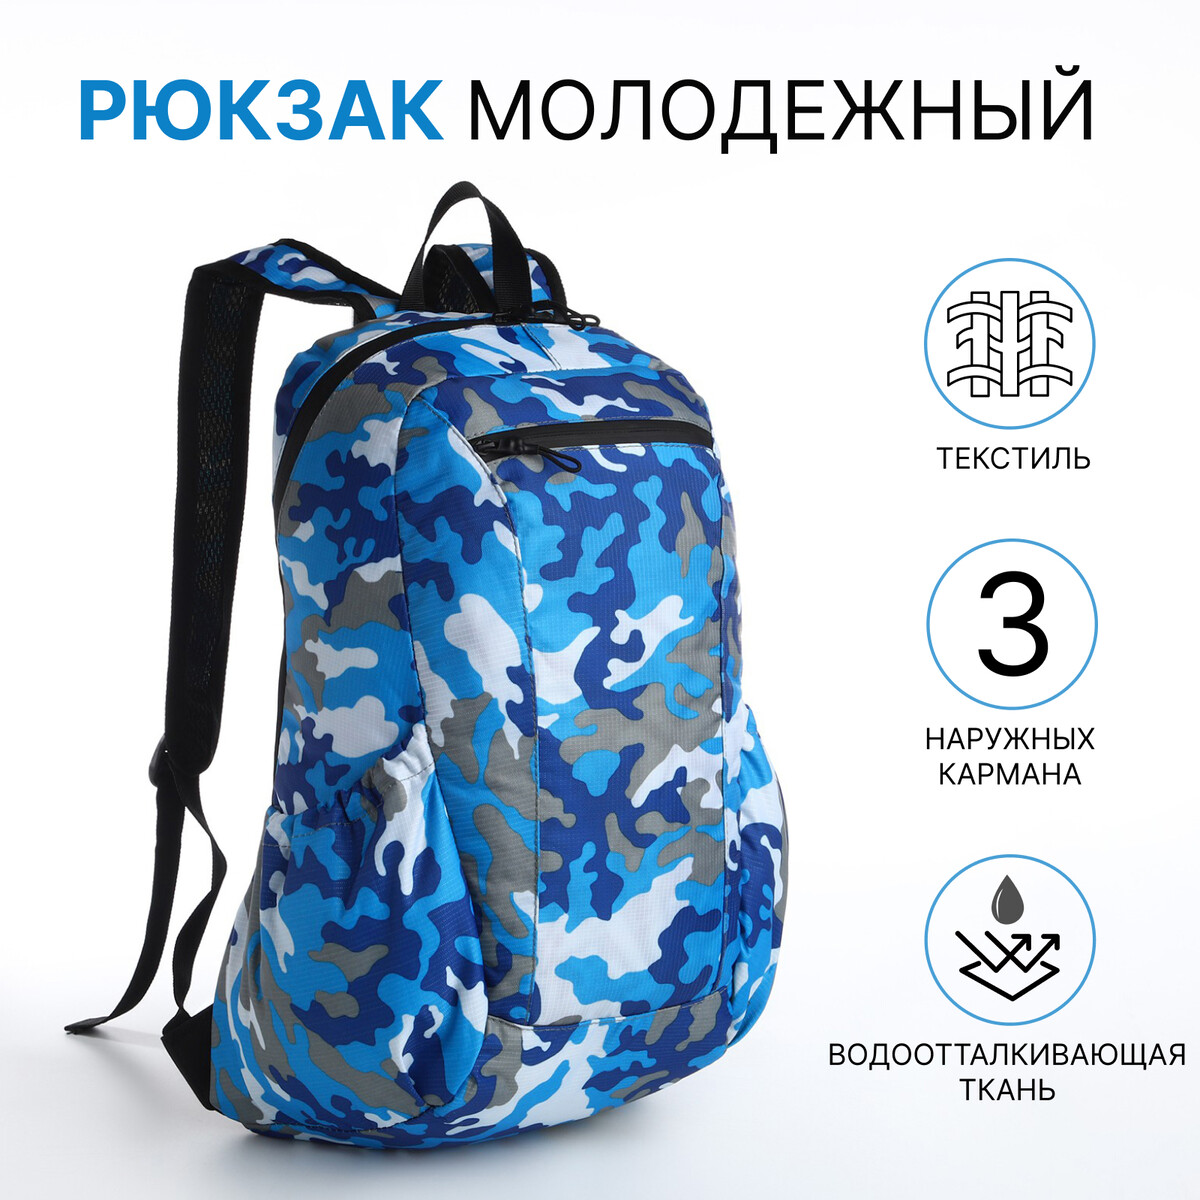 Рюкзак молодежный, водонепроницаемый на молнии, 3 кармана, цвет голубой/синий